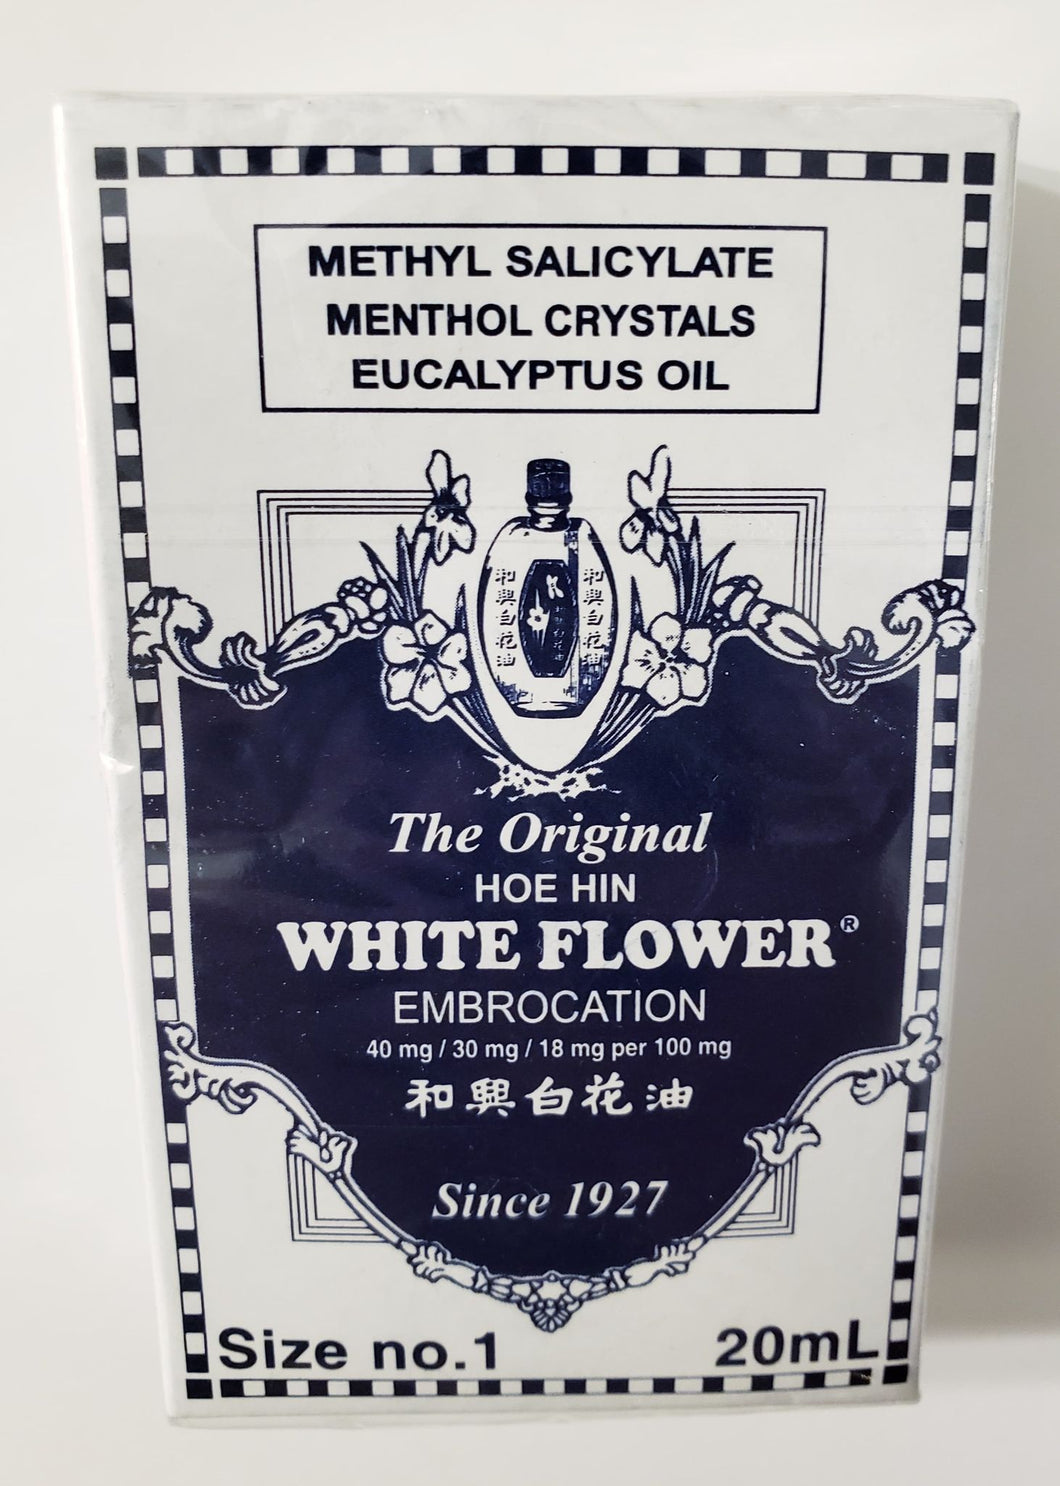 The Original White Flower 20 mL